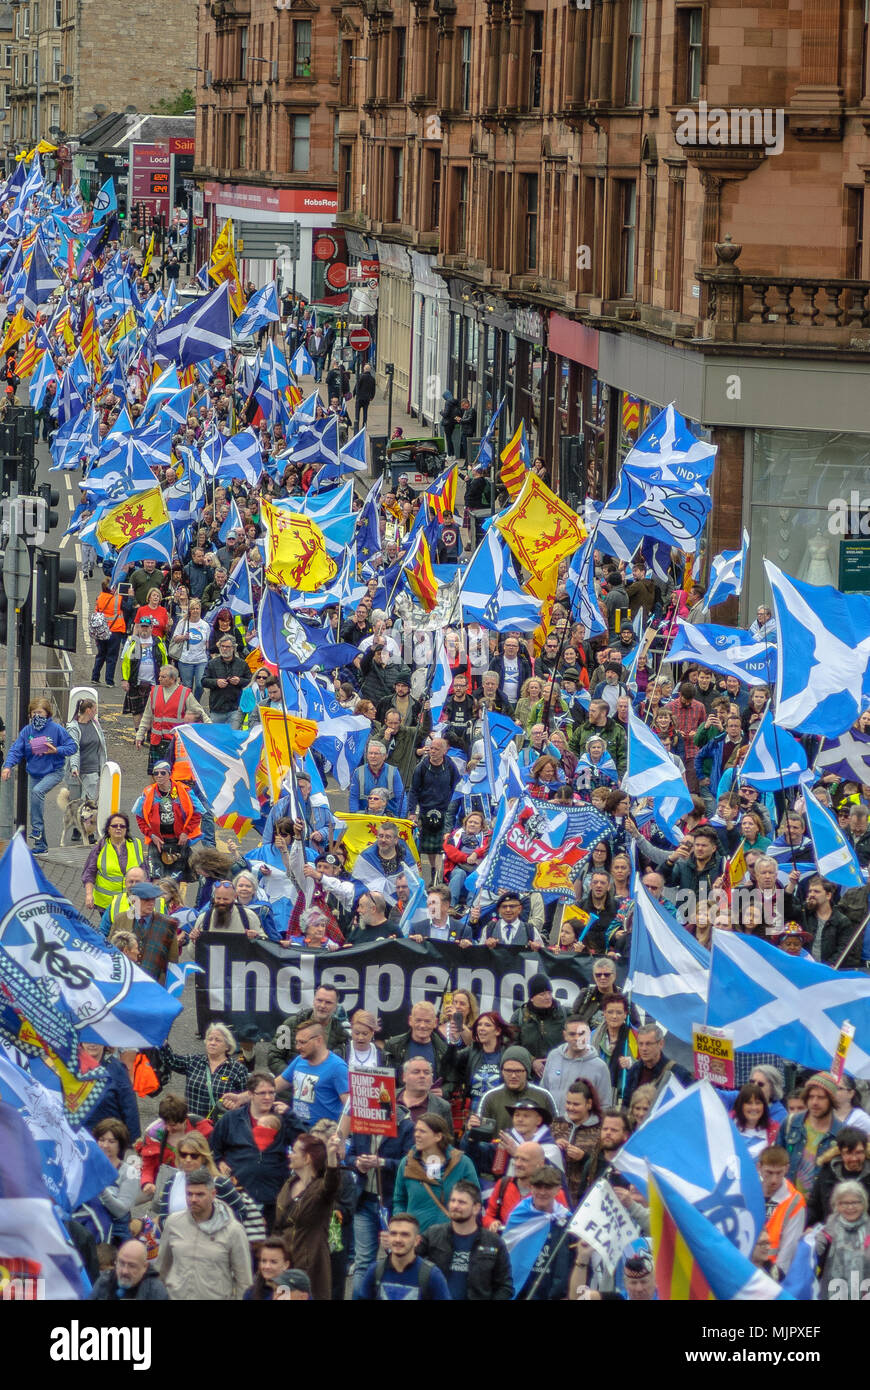 Un aperçu de la procession de mars. Des milliers de partisans de l'indépendance écossaise ont défilé à Glasgow dans le cadre de la 'tous' sous une bannière de protestation, comme la coalition vise à exécuter de tels cas jusqu'à ce que l'Écosse est "libre". Banque D'Images